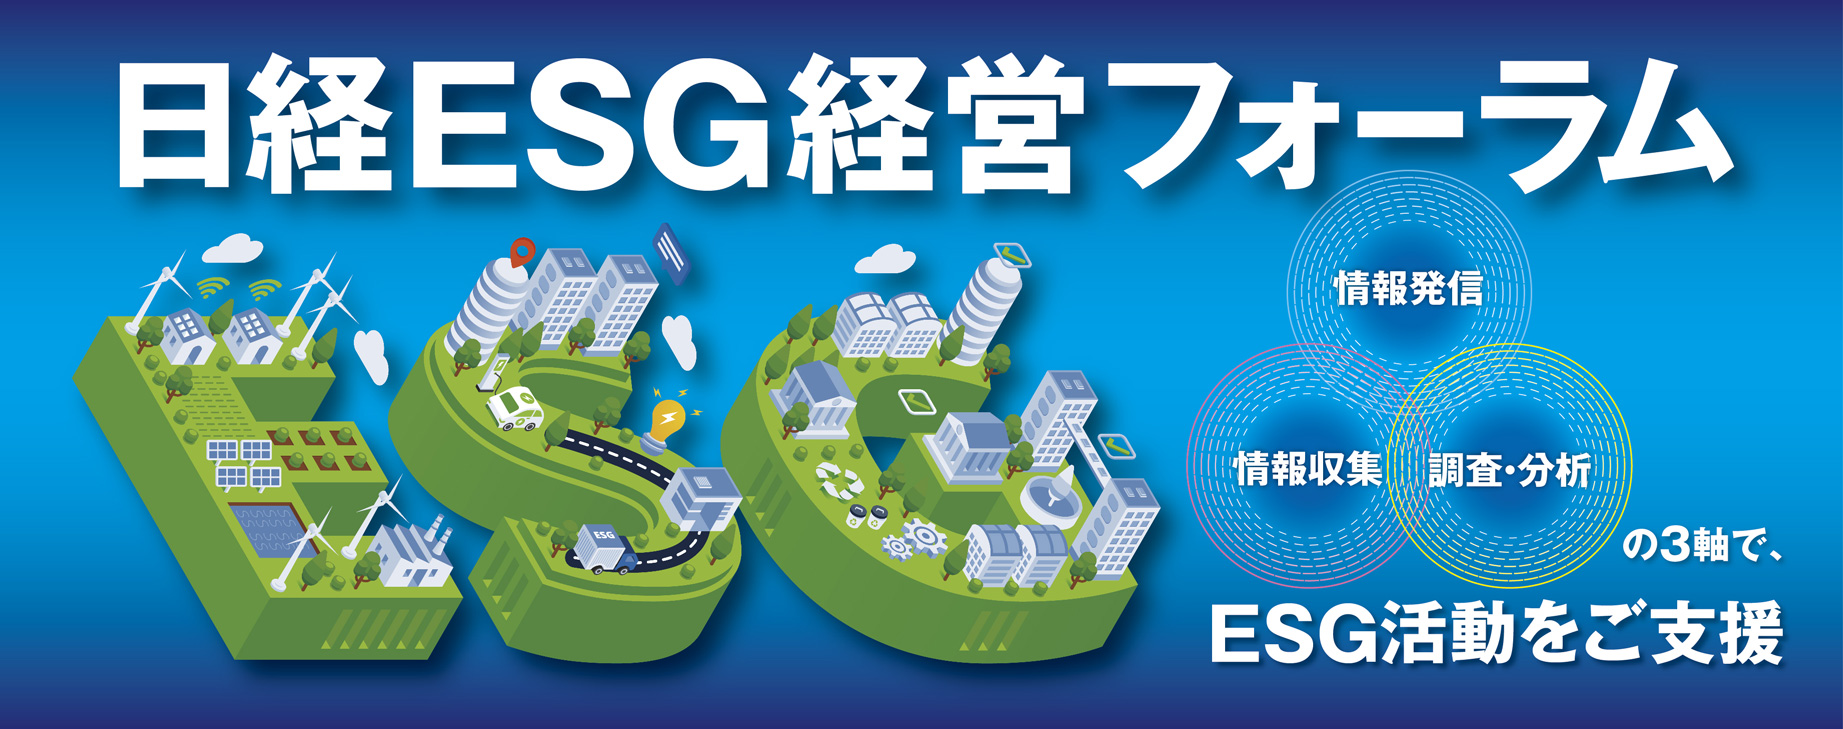 日経ESG経営フォーラム